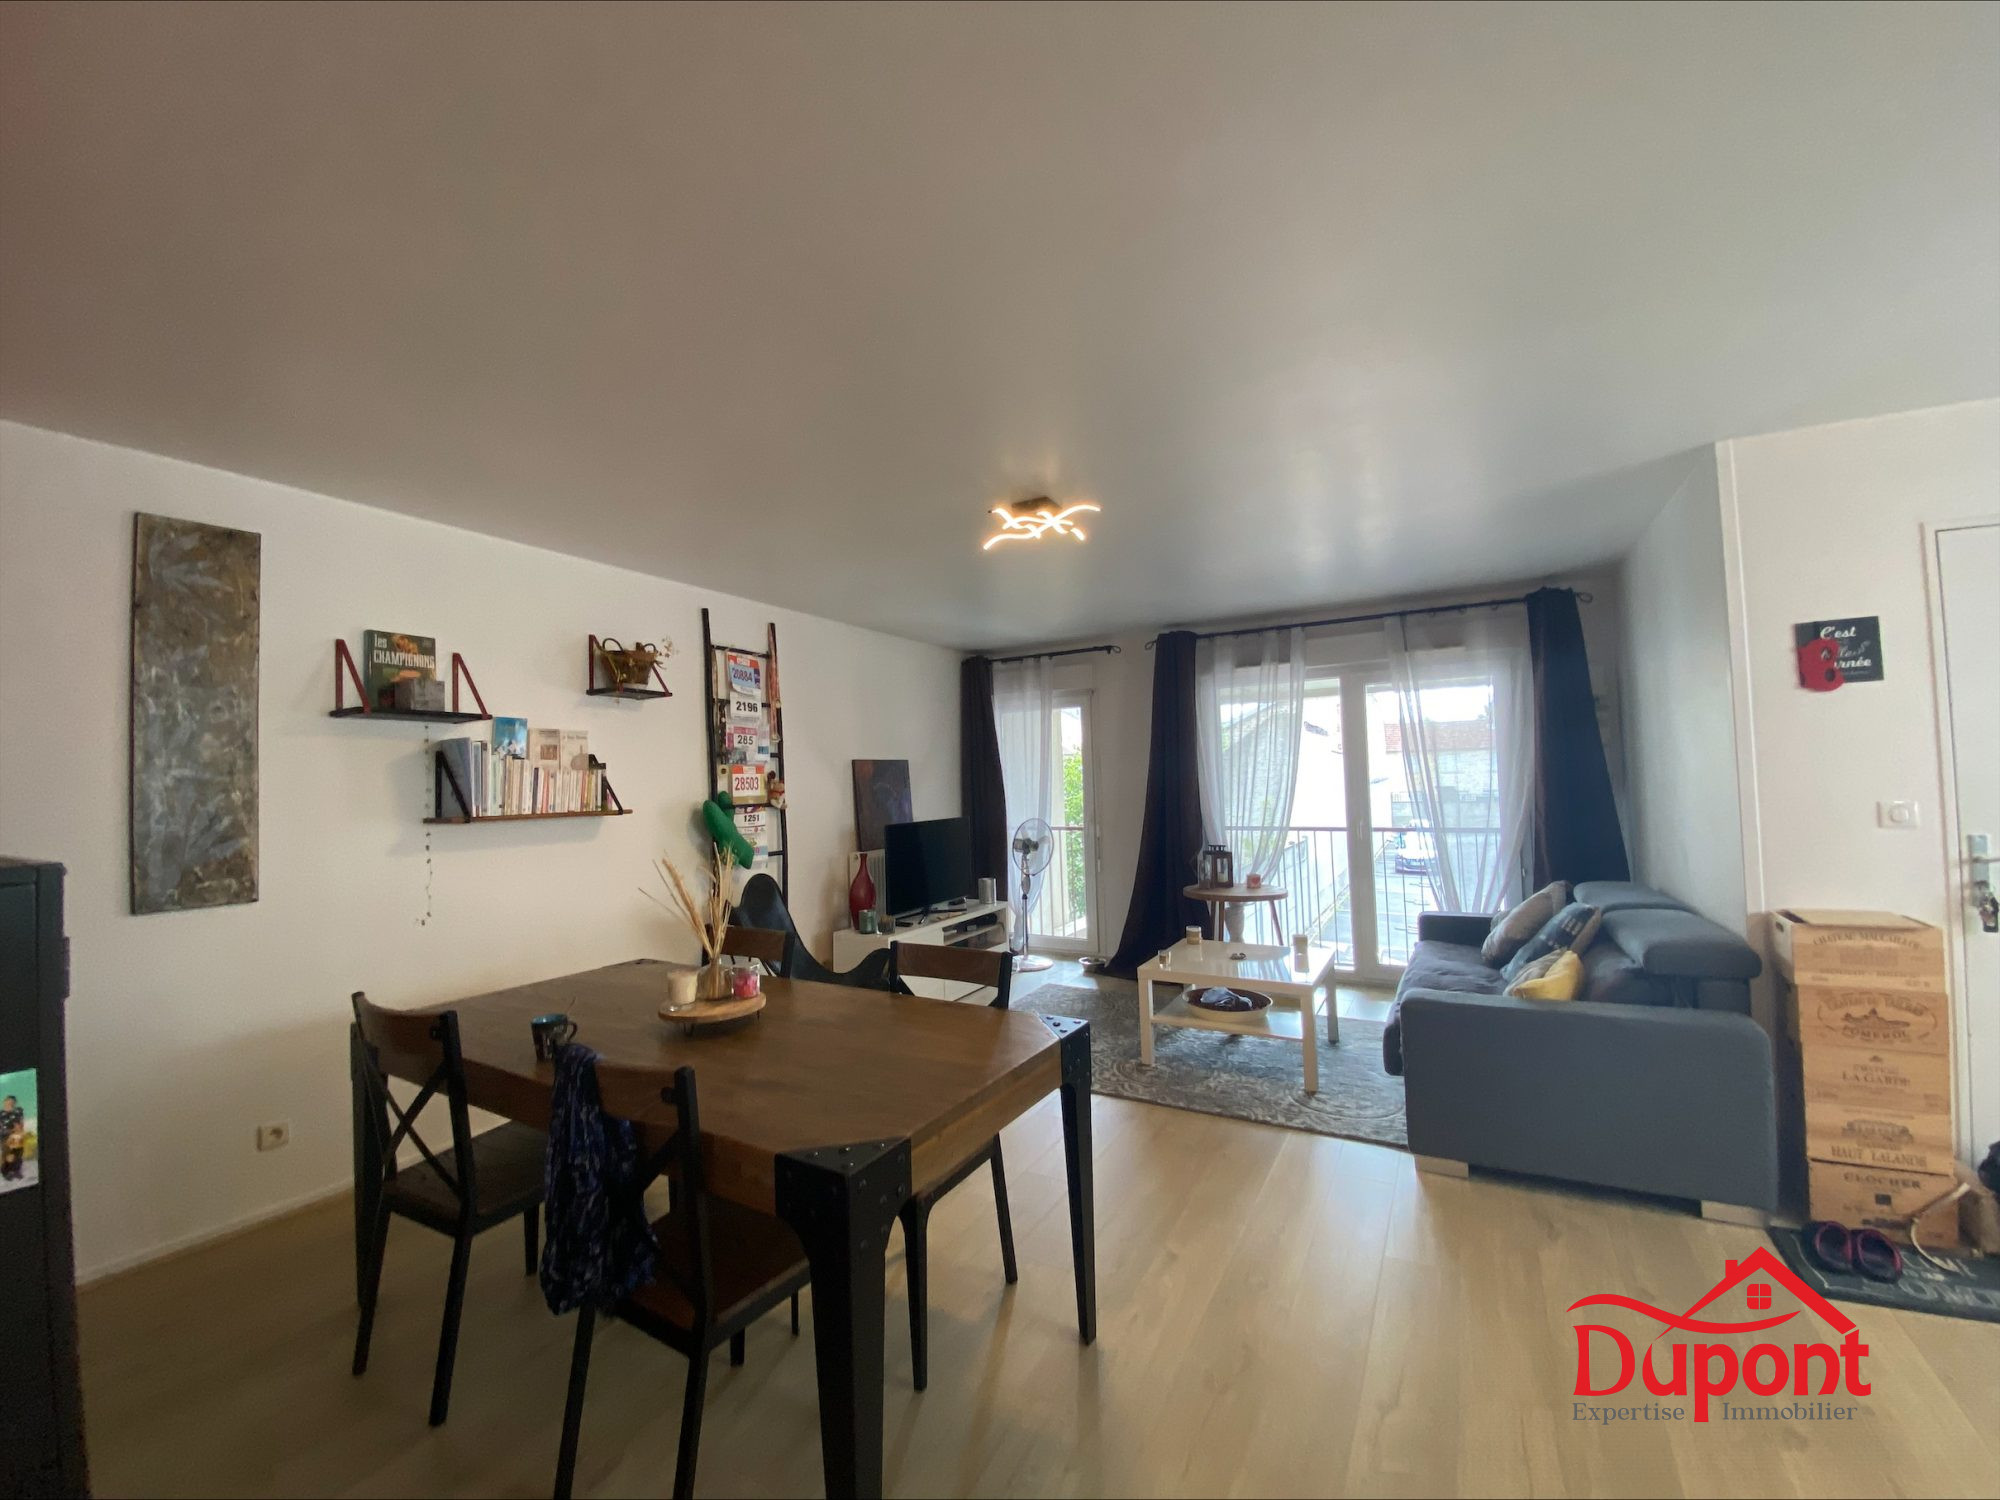 Vente Appartement 67m² 3 Pièces à Reims (51100) - Dupont Expertise Immobilier